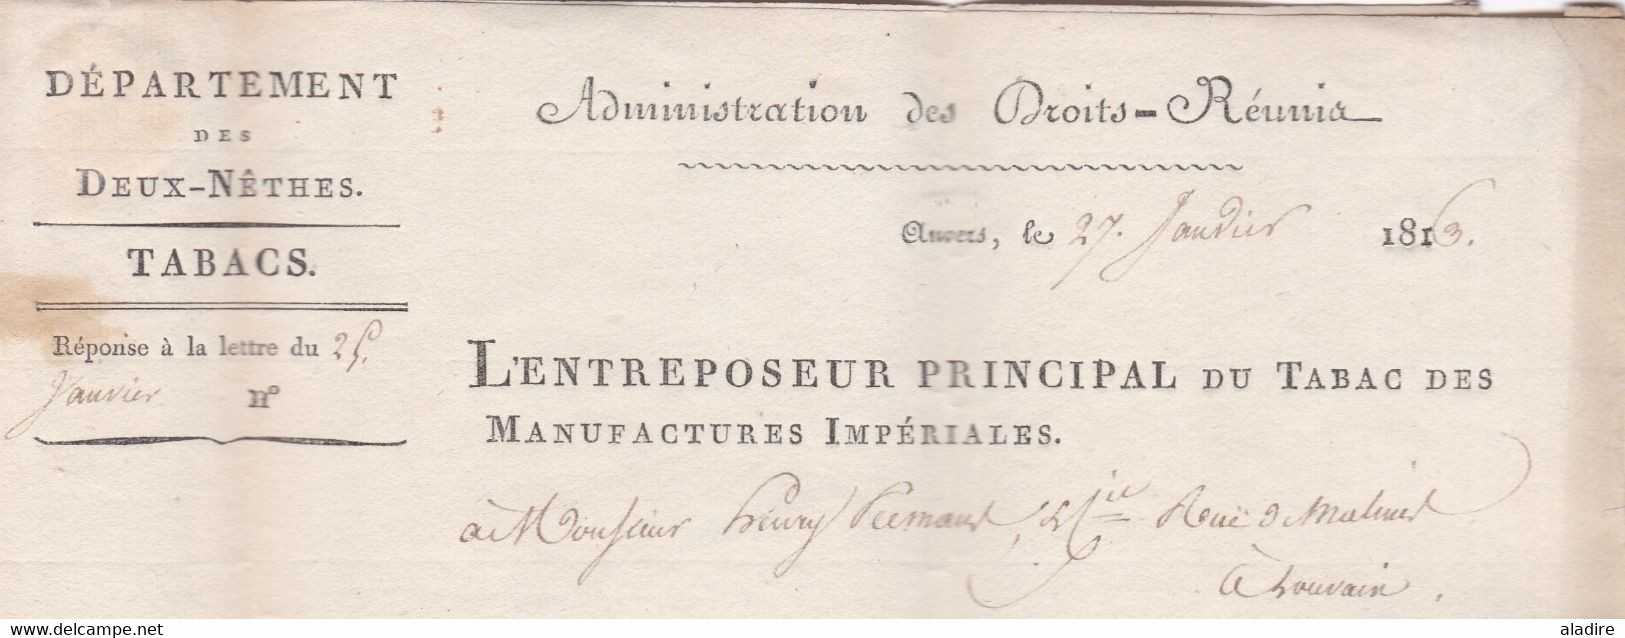 1813 - Marque Postale 93 ANVERS Antwerp, Dept conquis des Deux Nêthes sur lettre pliée avec corresp vers LOUVAIN